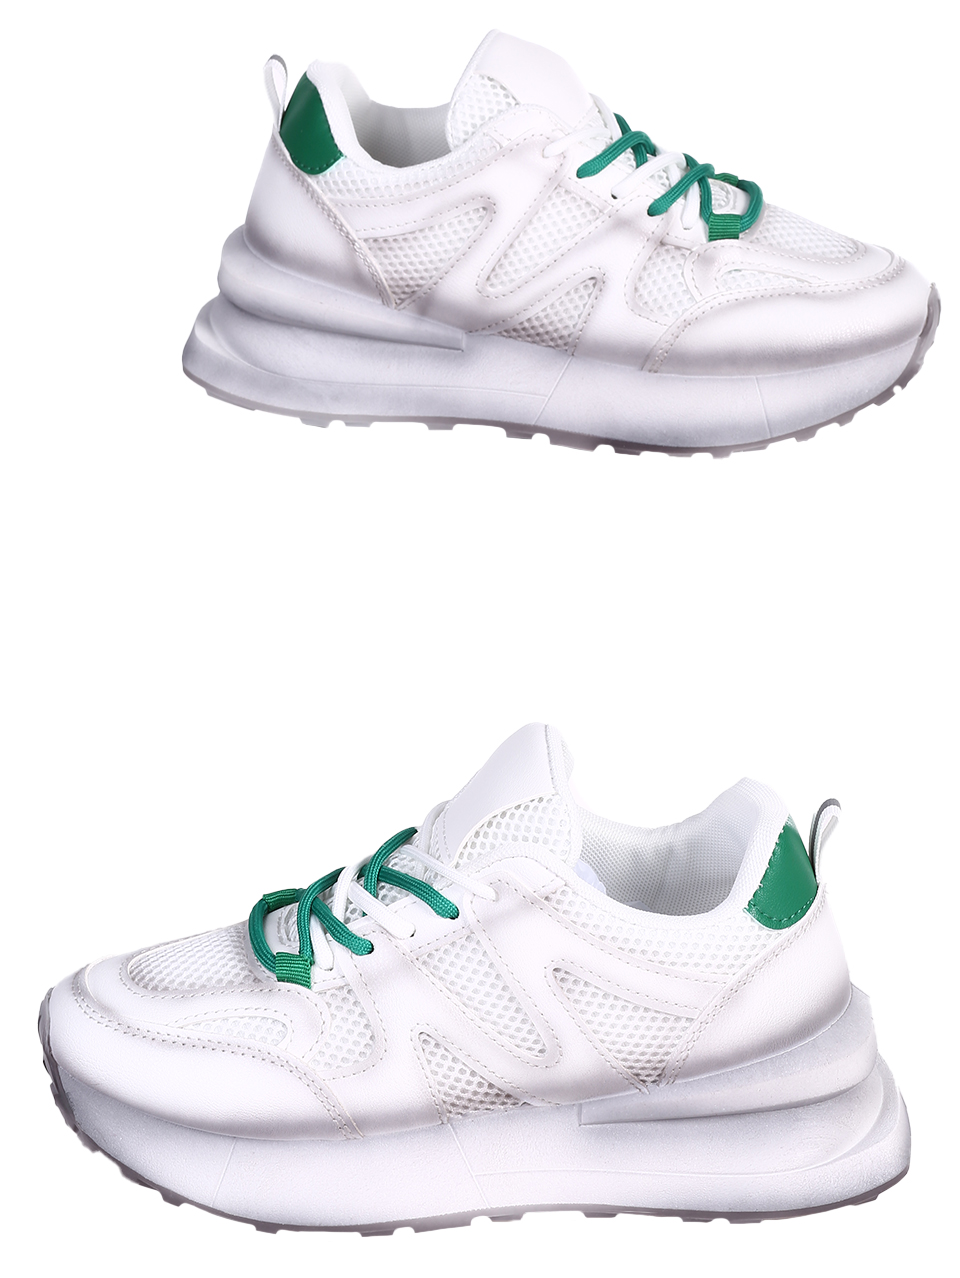 Eжедневни дамски обувки в сив/зелен цвят 3U-24002 grey/green